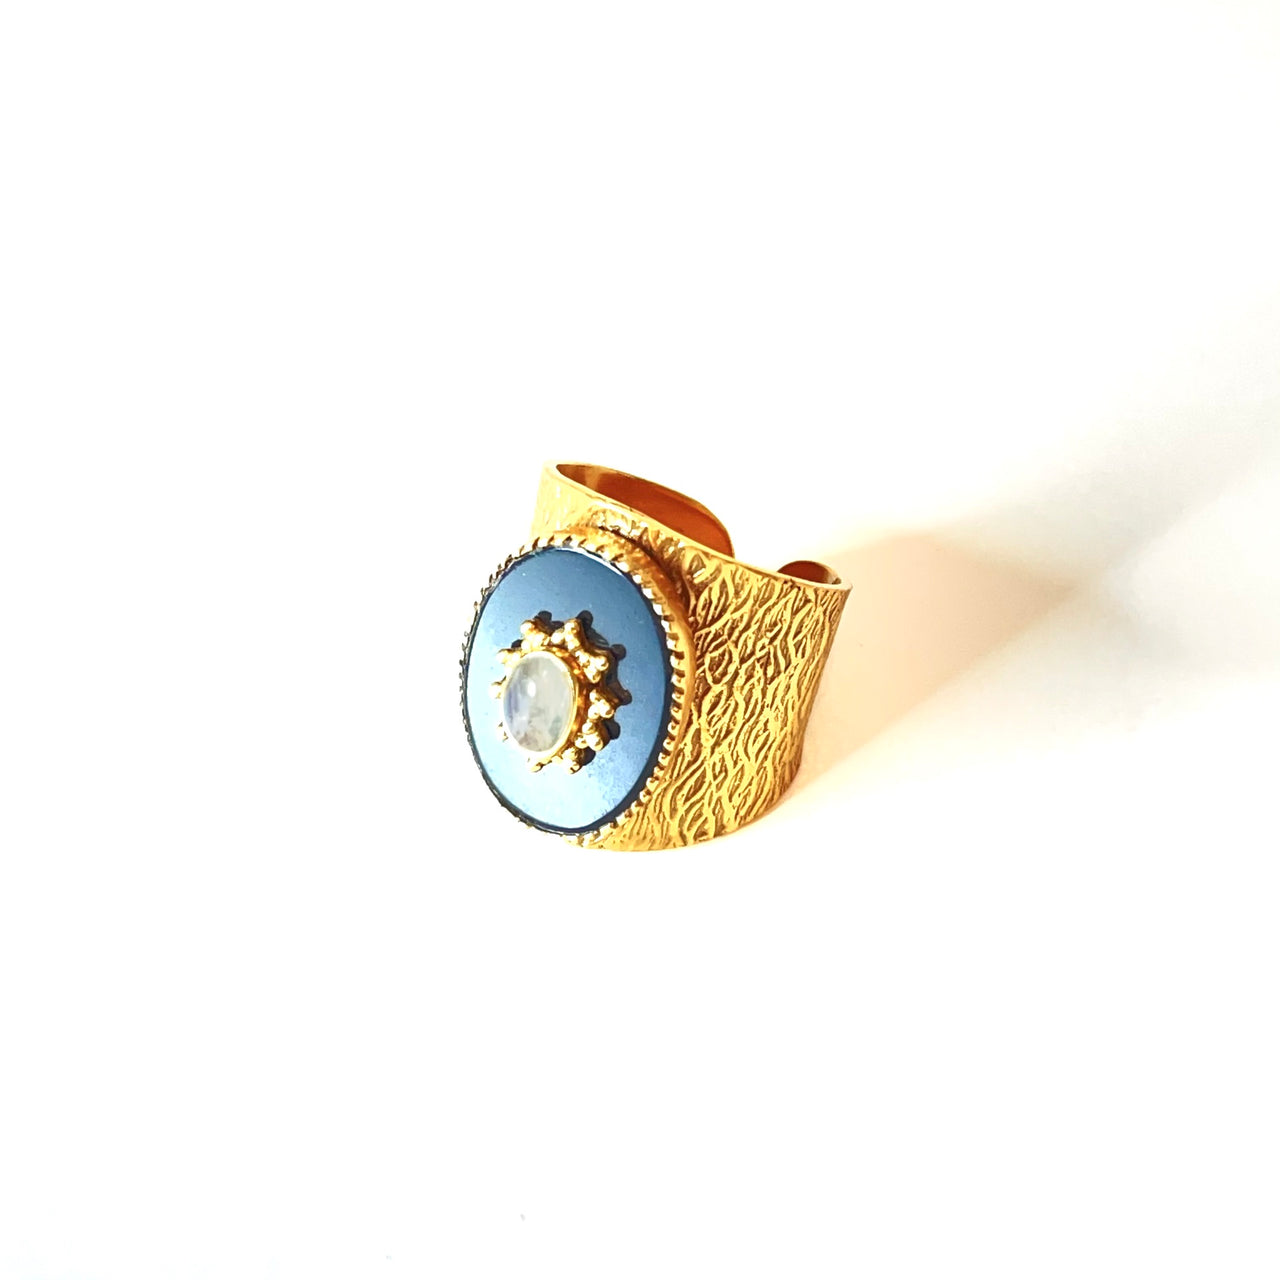 Espectacular anillo de bronce con baño de oro. El detalle central es de Onix con una piedra luna. Este anillo es ajustable lo que lo hace perfecto. Además es super combinable con tu look favorito.